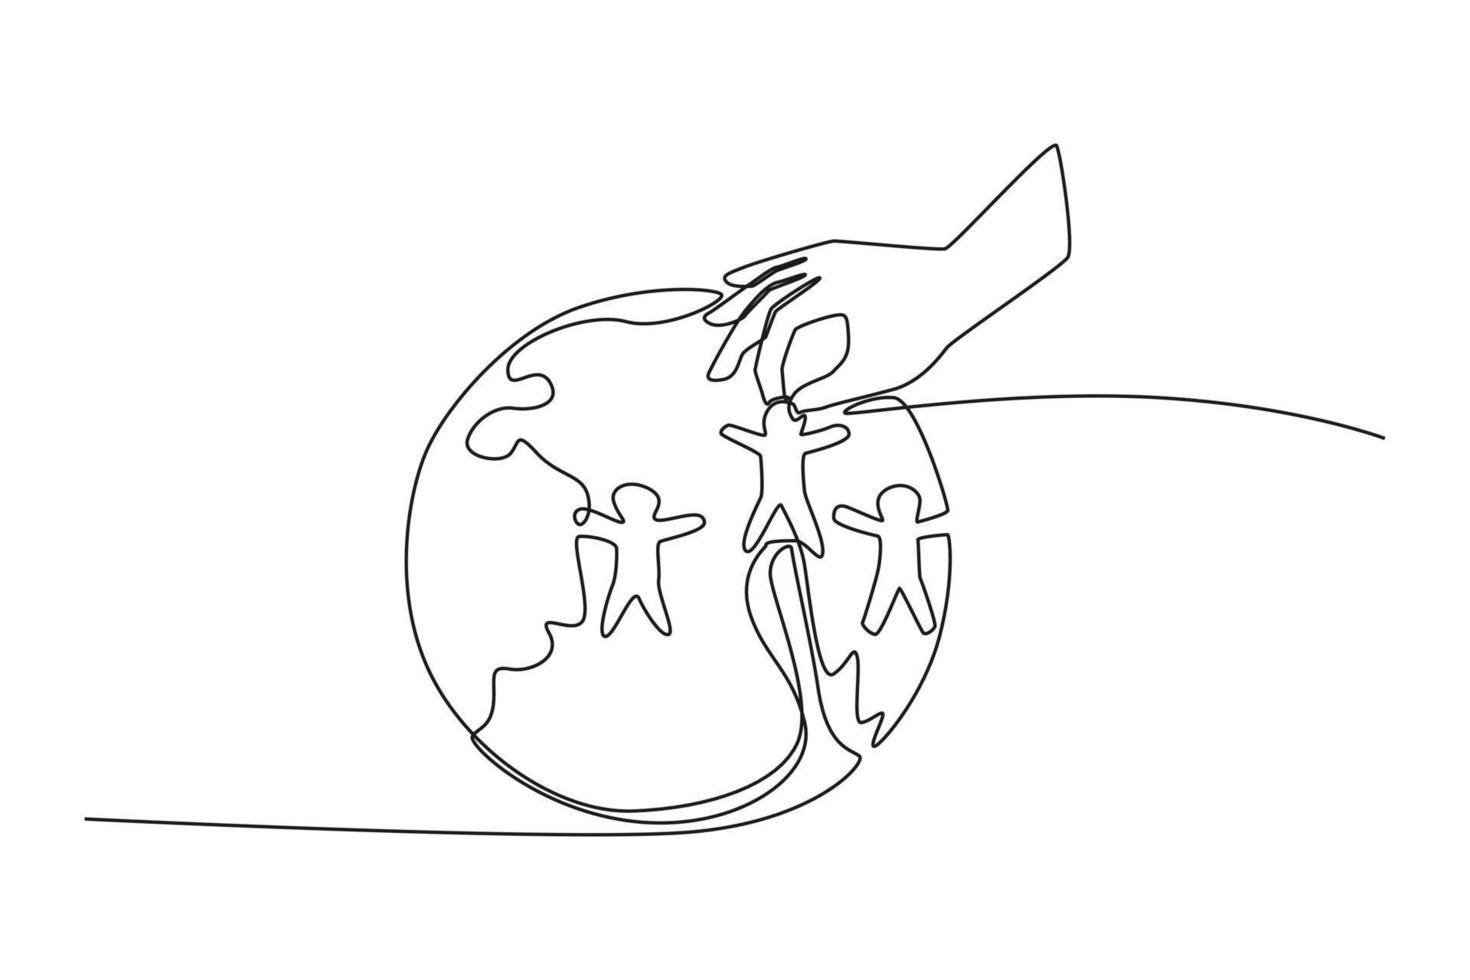 einzelne einstrichzeichnungshand, die menschenikone auf globus setzt. Weltbevölkerungstag. ununterbrochene Linie zeichnen grafische Vektorillustration des Designs. vektor